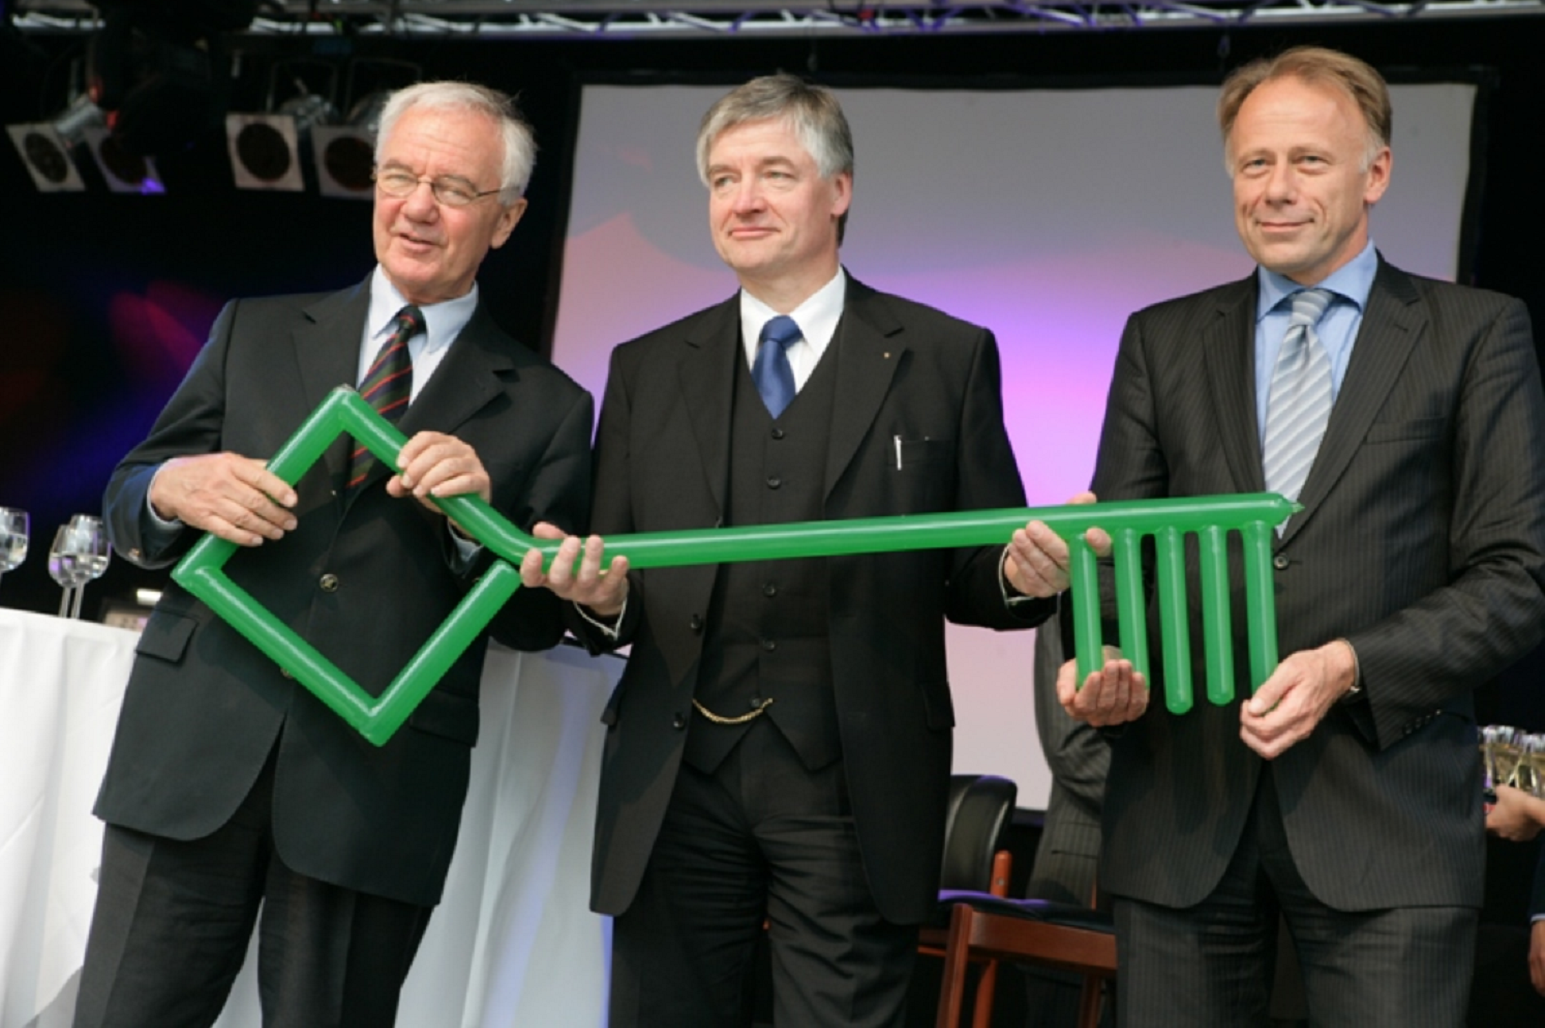 Gruppenfoto: drei Männer in Anzug und Krawatte halten einen riesigen grünen Schlüssel, im Hintergrund Sektgläser